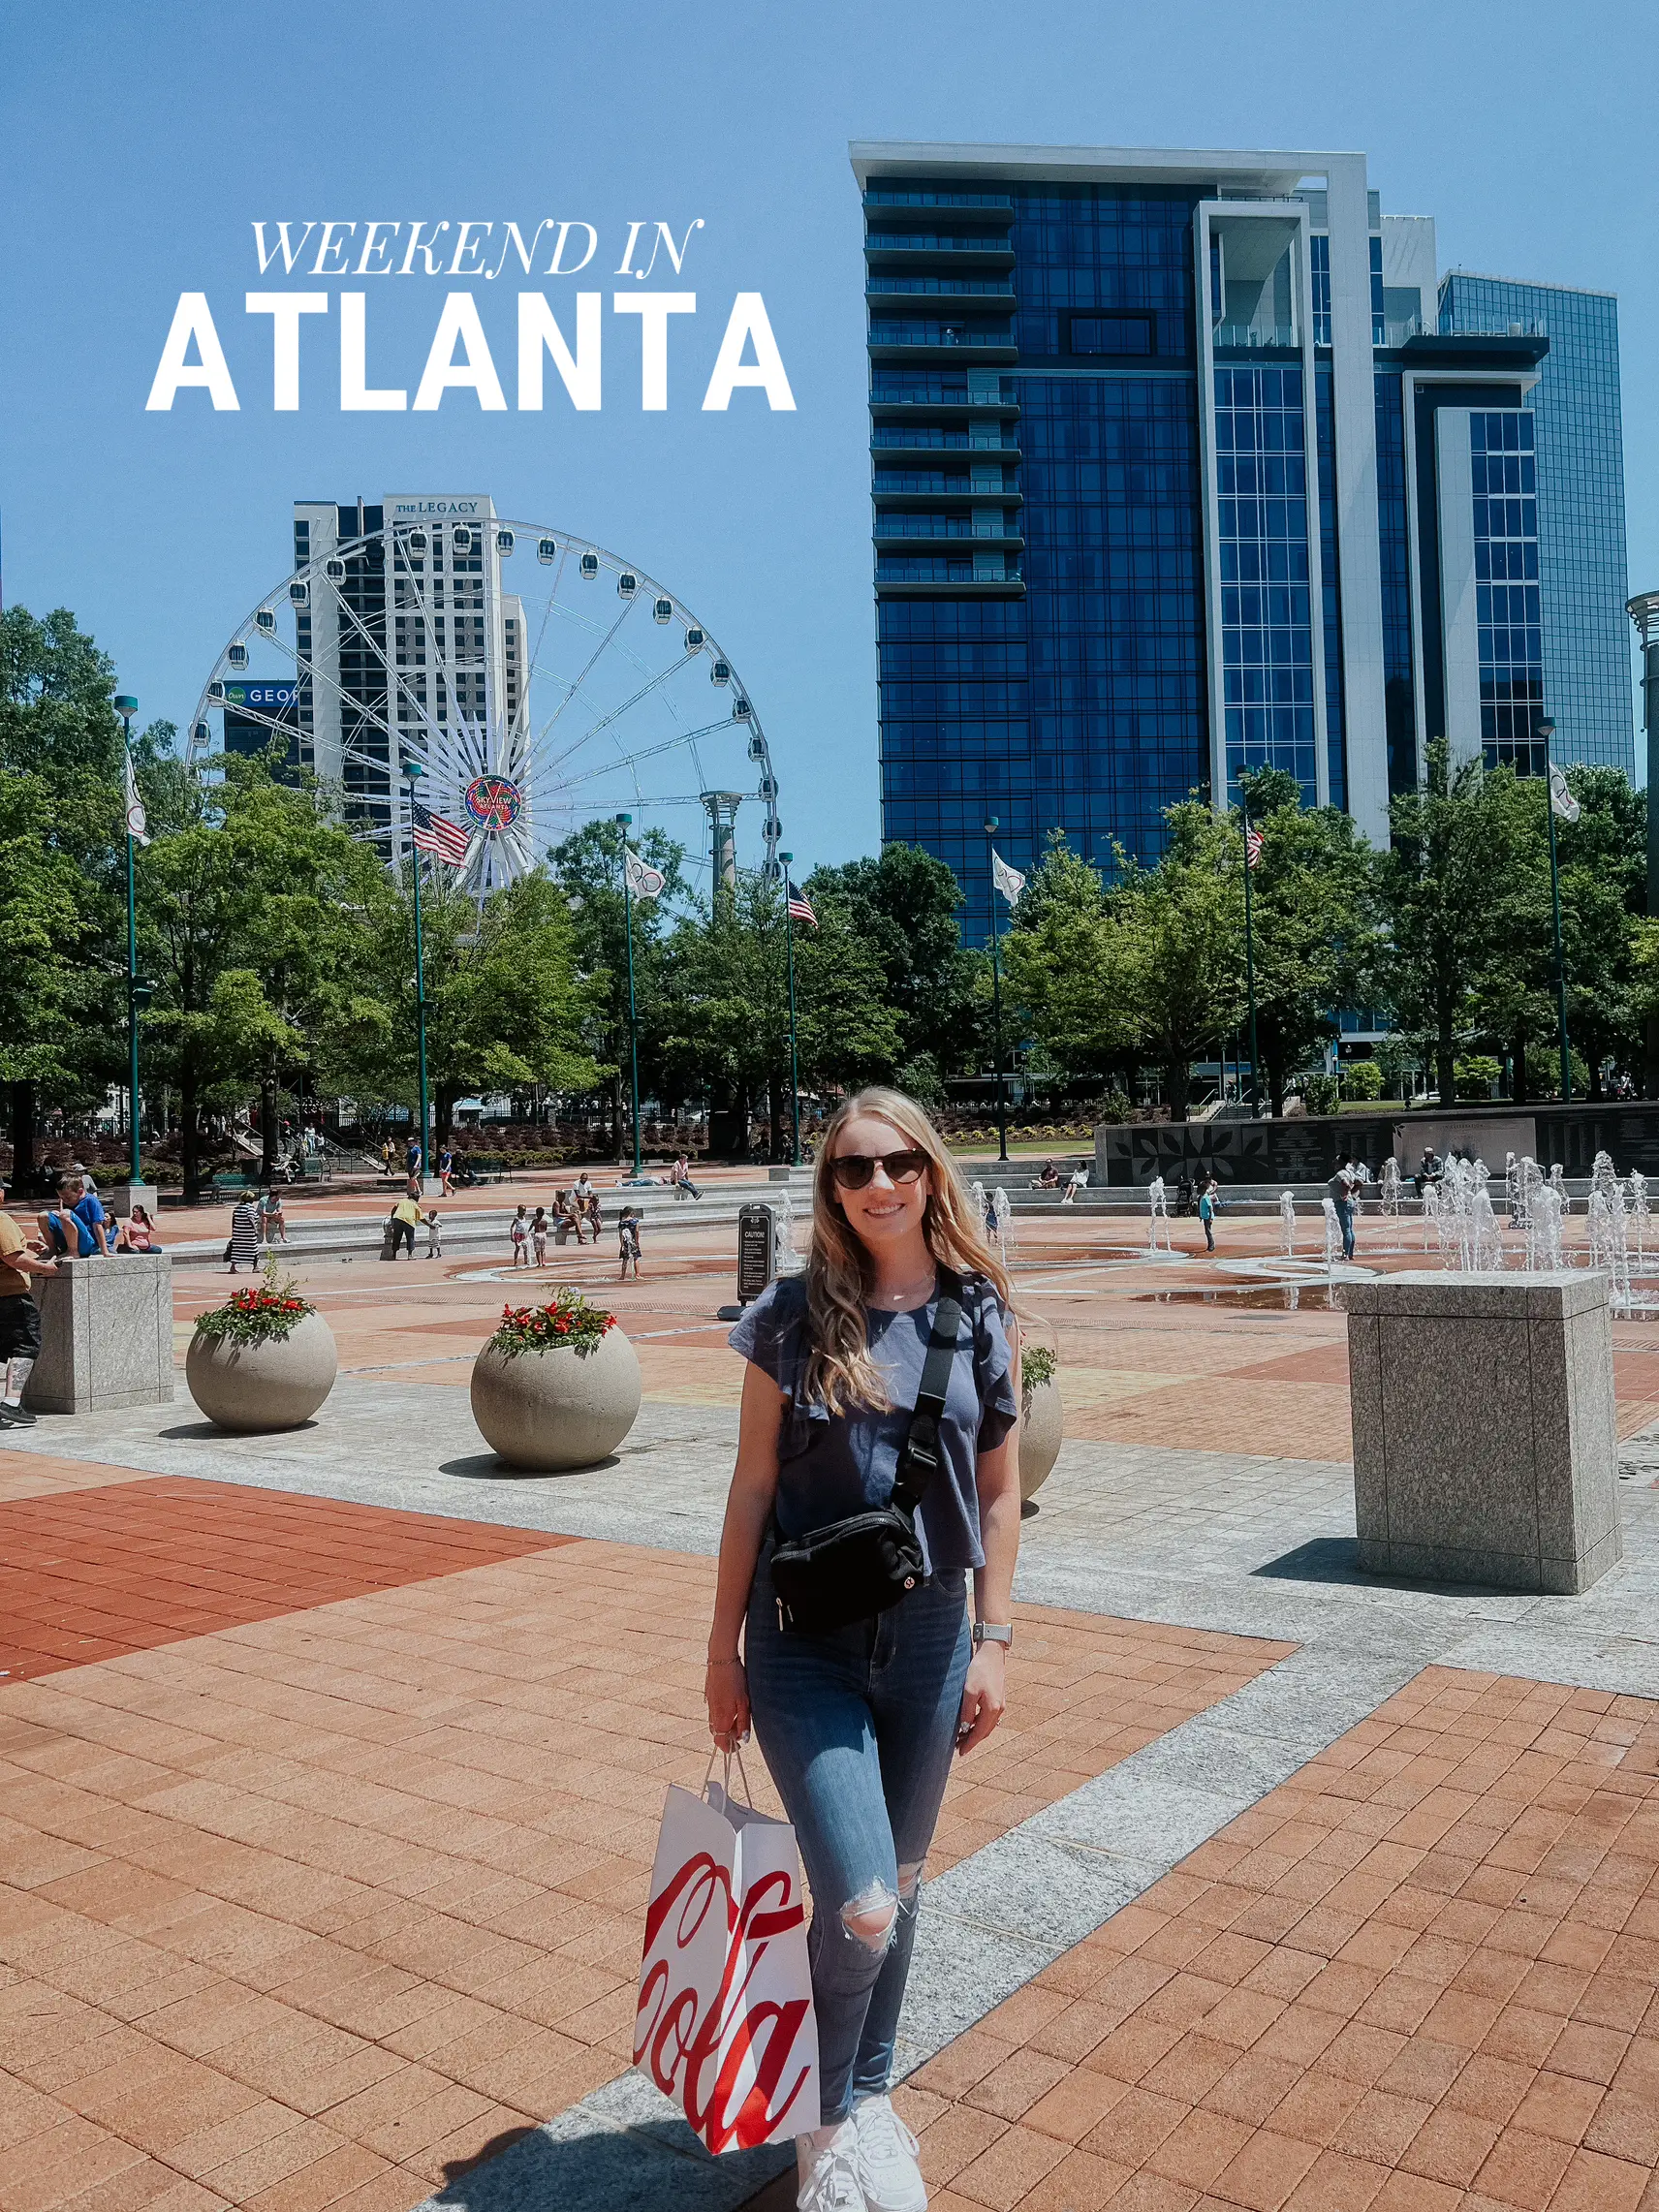 Atlanta weekend🤪's images